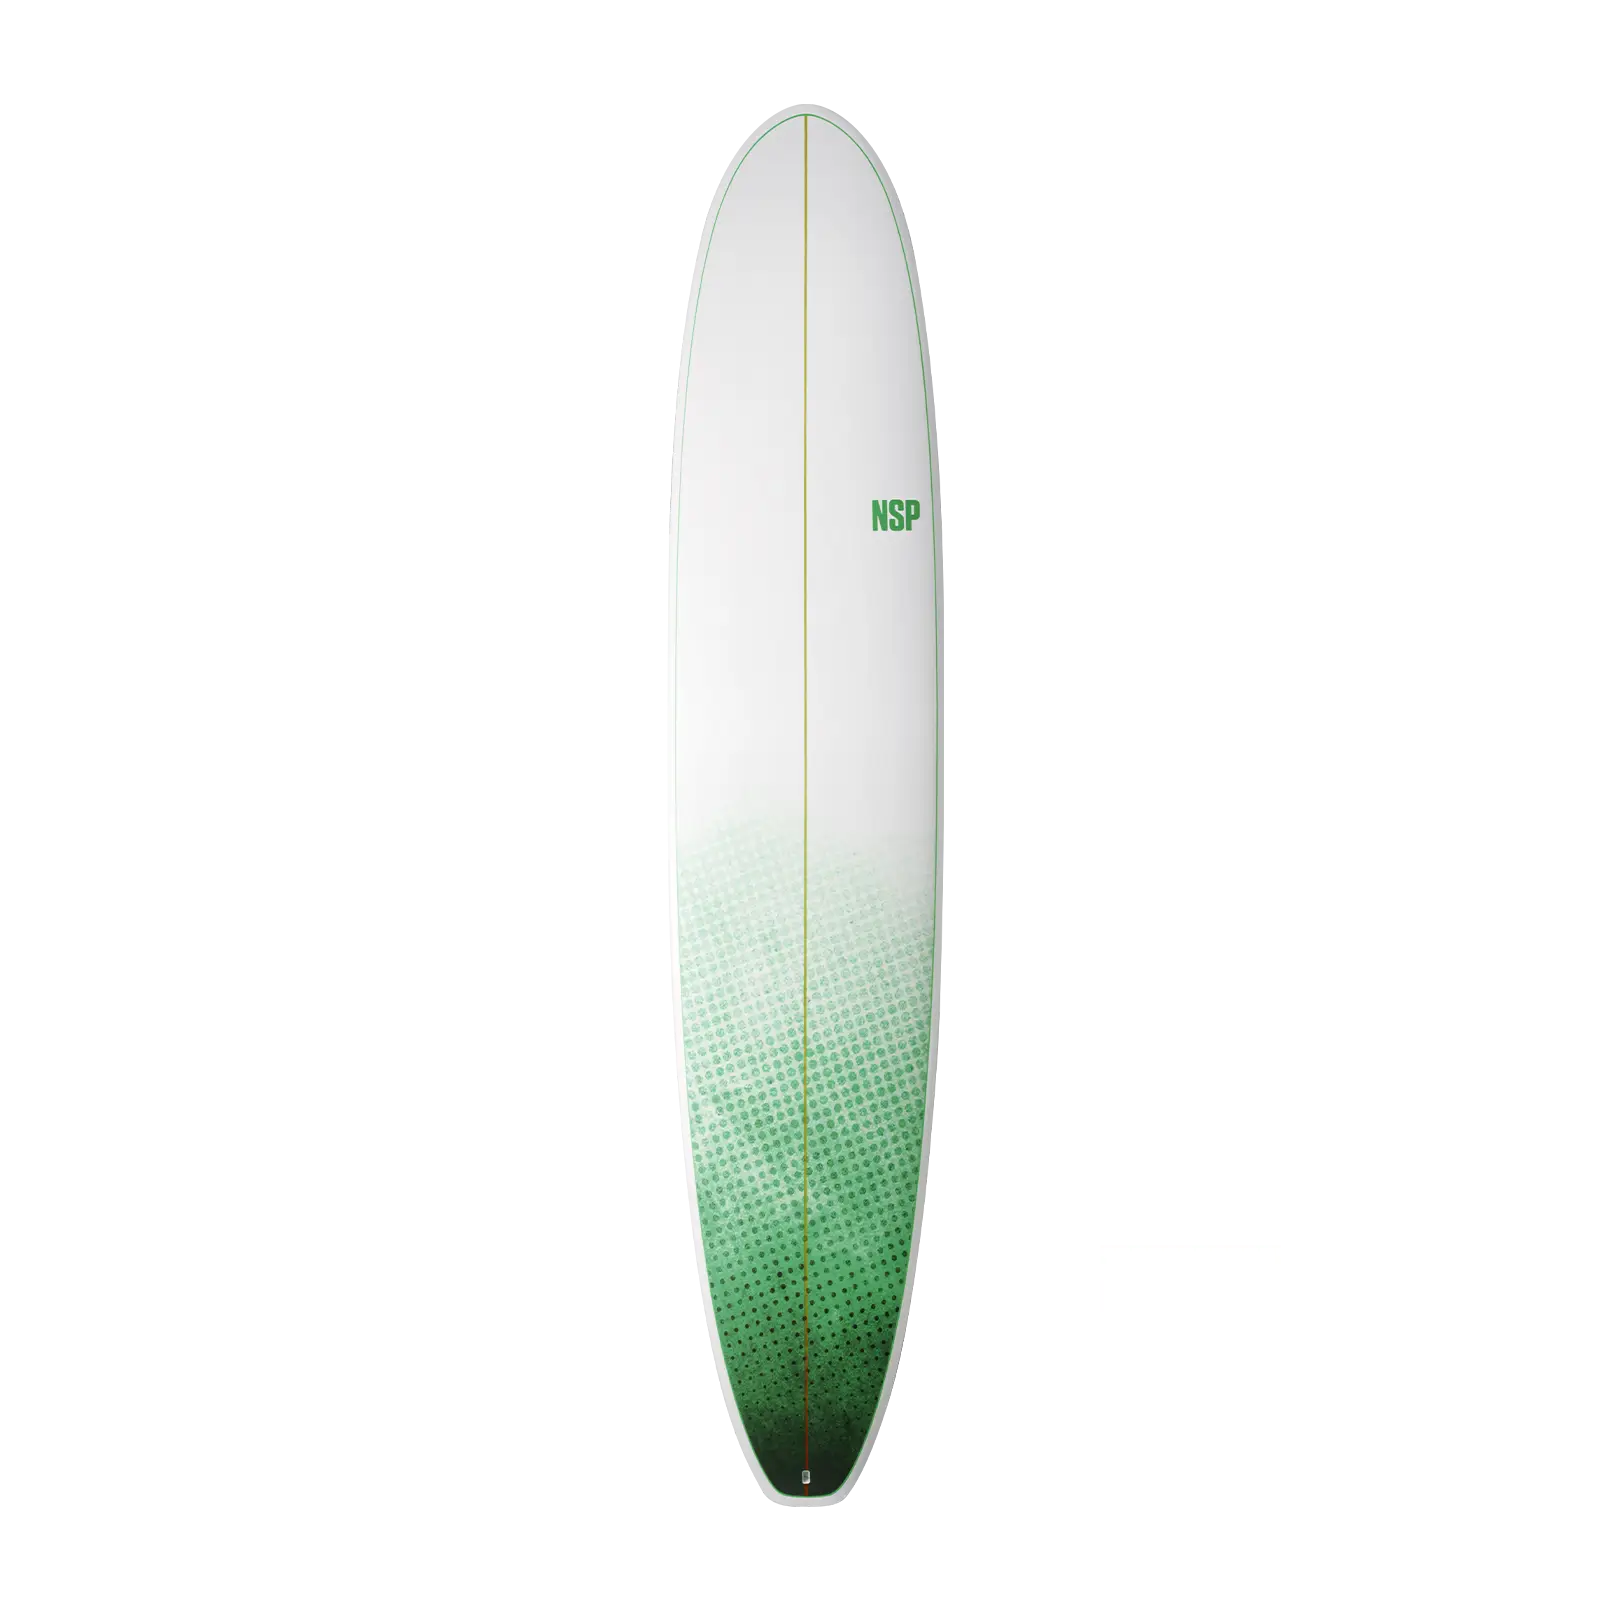 Longboard Surfboards NSP E+ Green